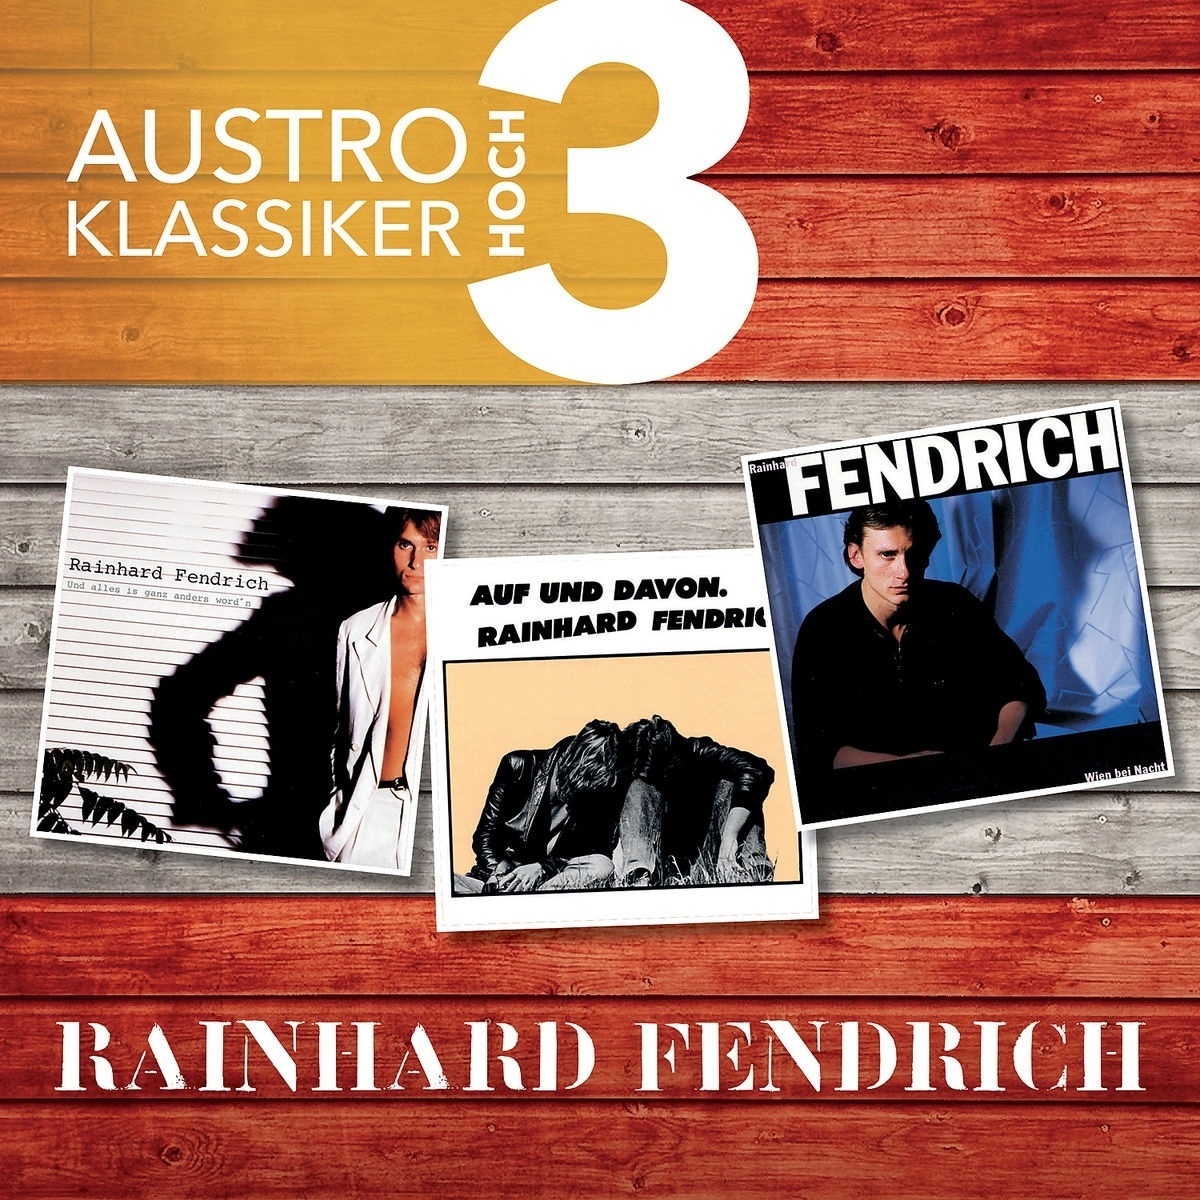 Und alles is ganz anders word'n - Rainhard Fendrich. (CD)